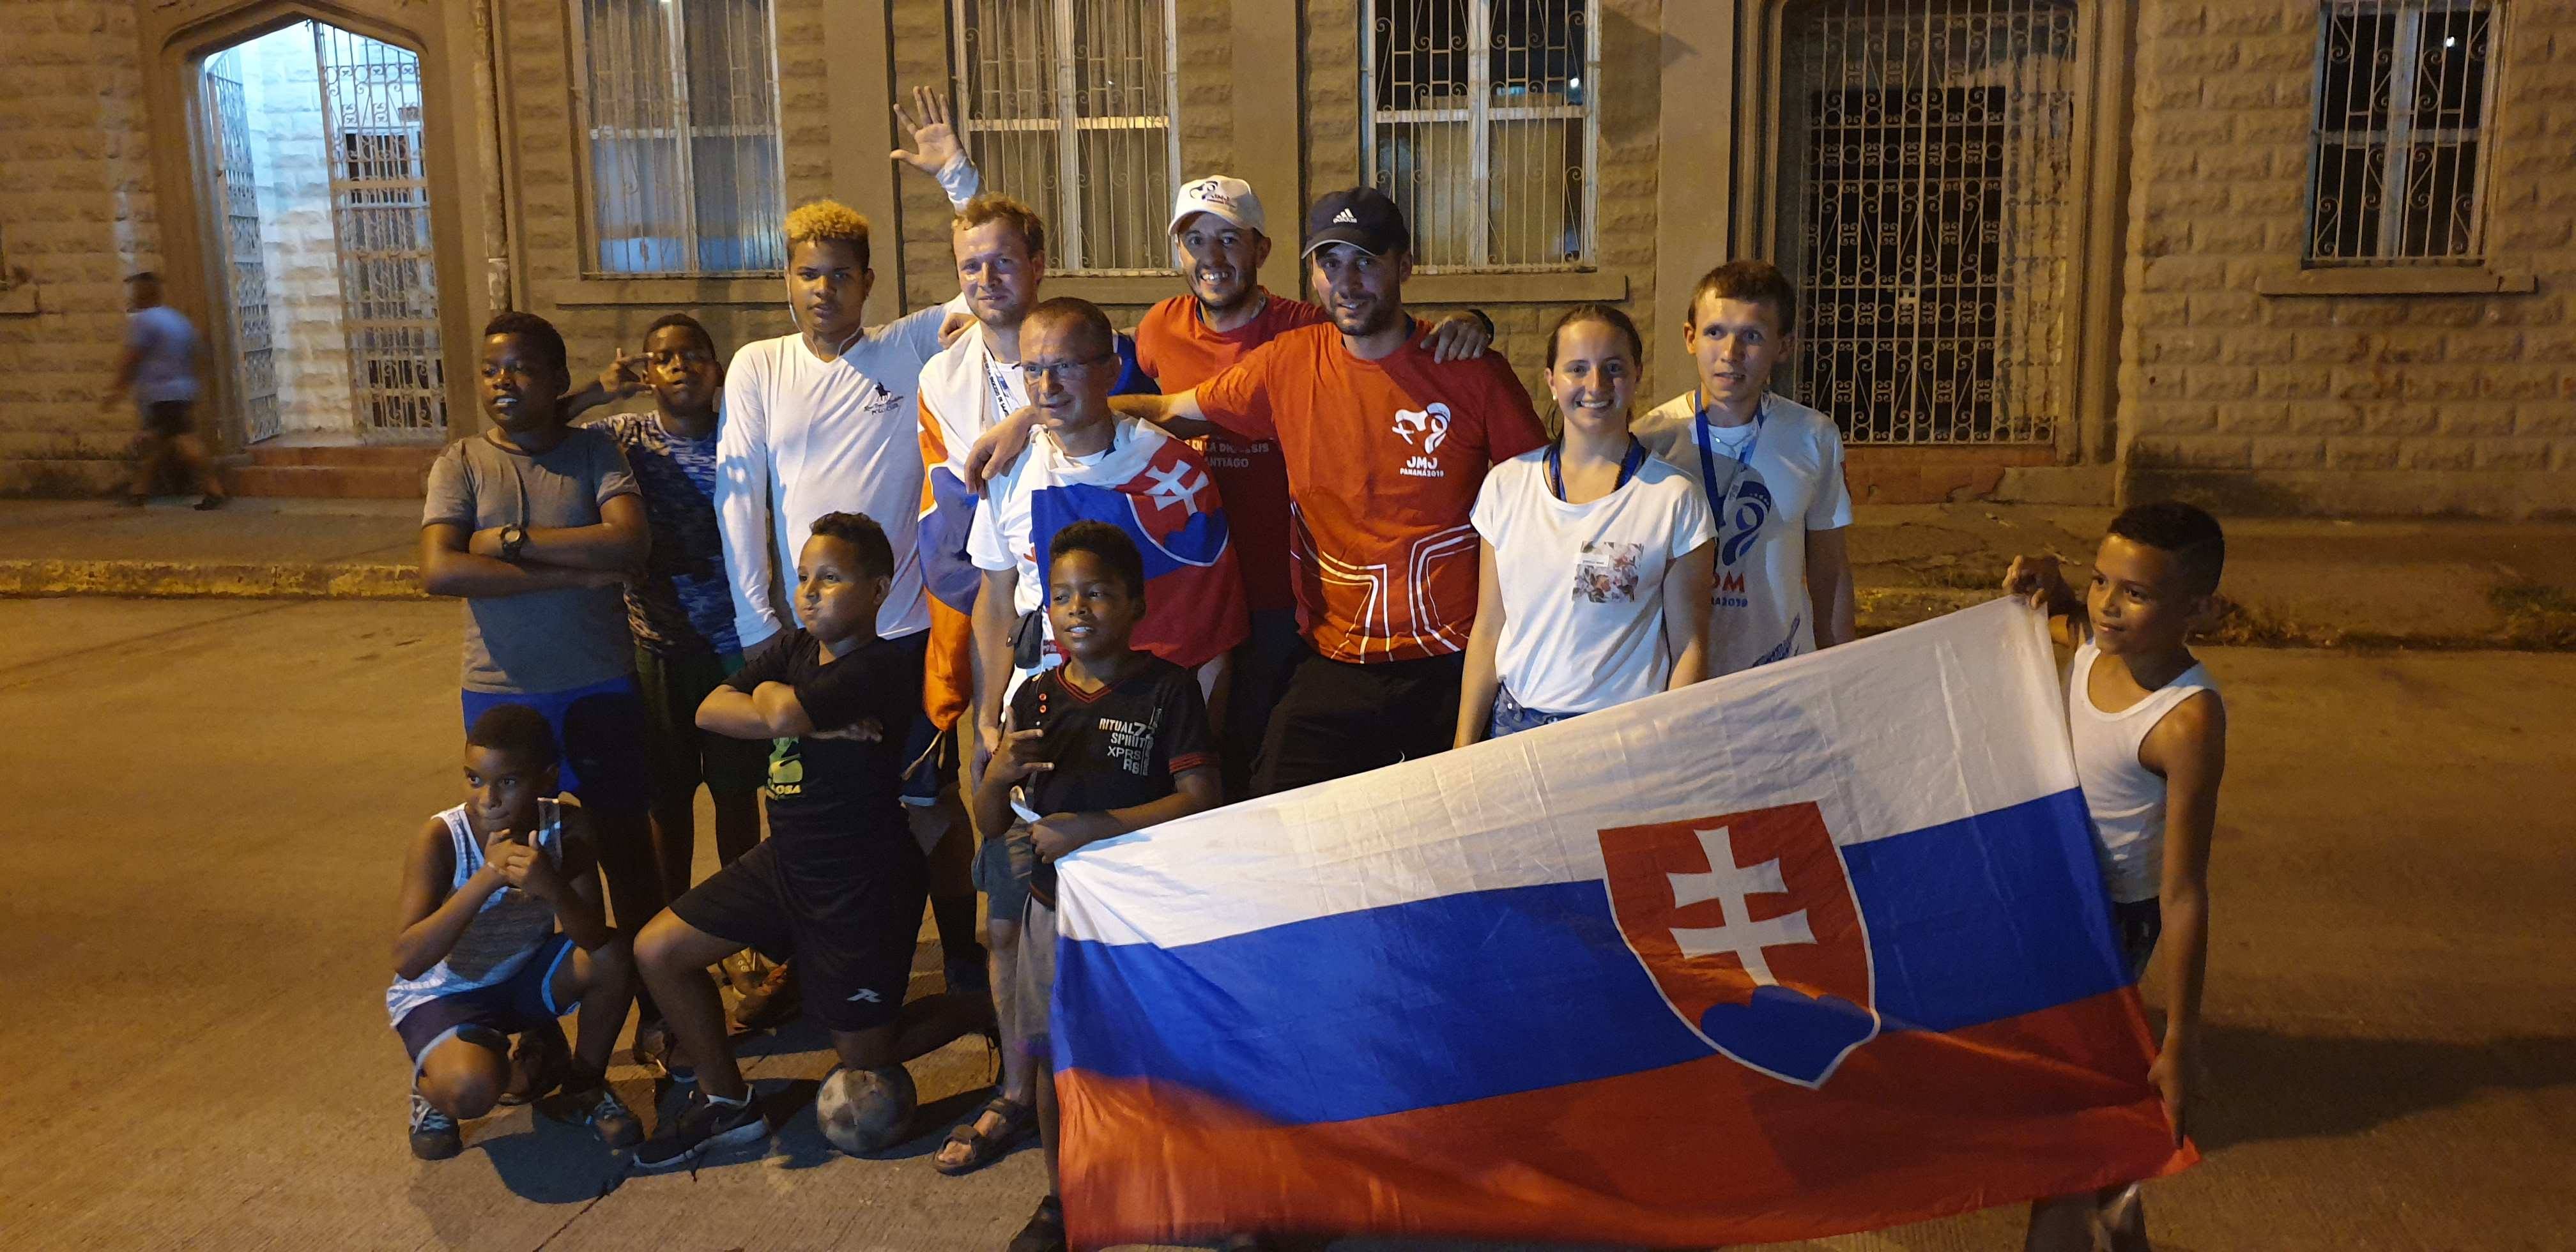 Záverečná fotografia po futbalovom zápase s panamskými chlapcami priamo na ulici